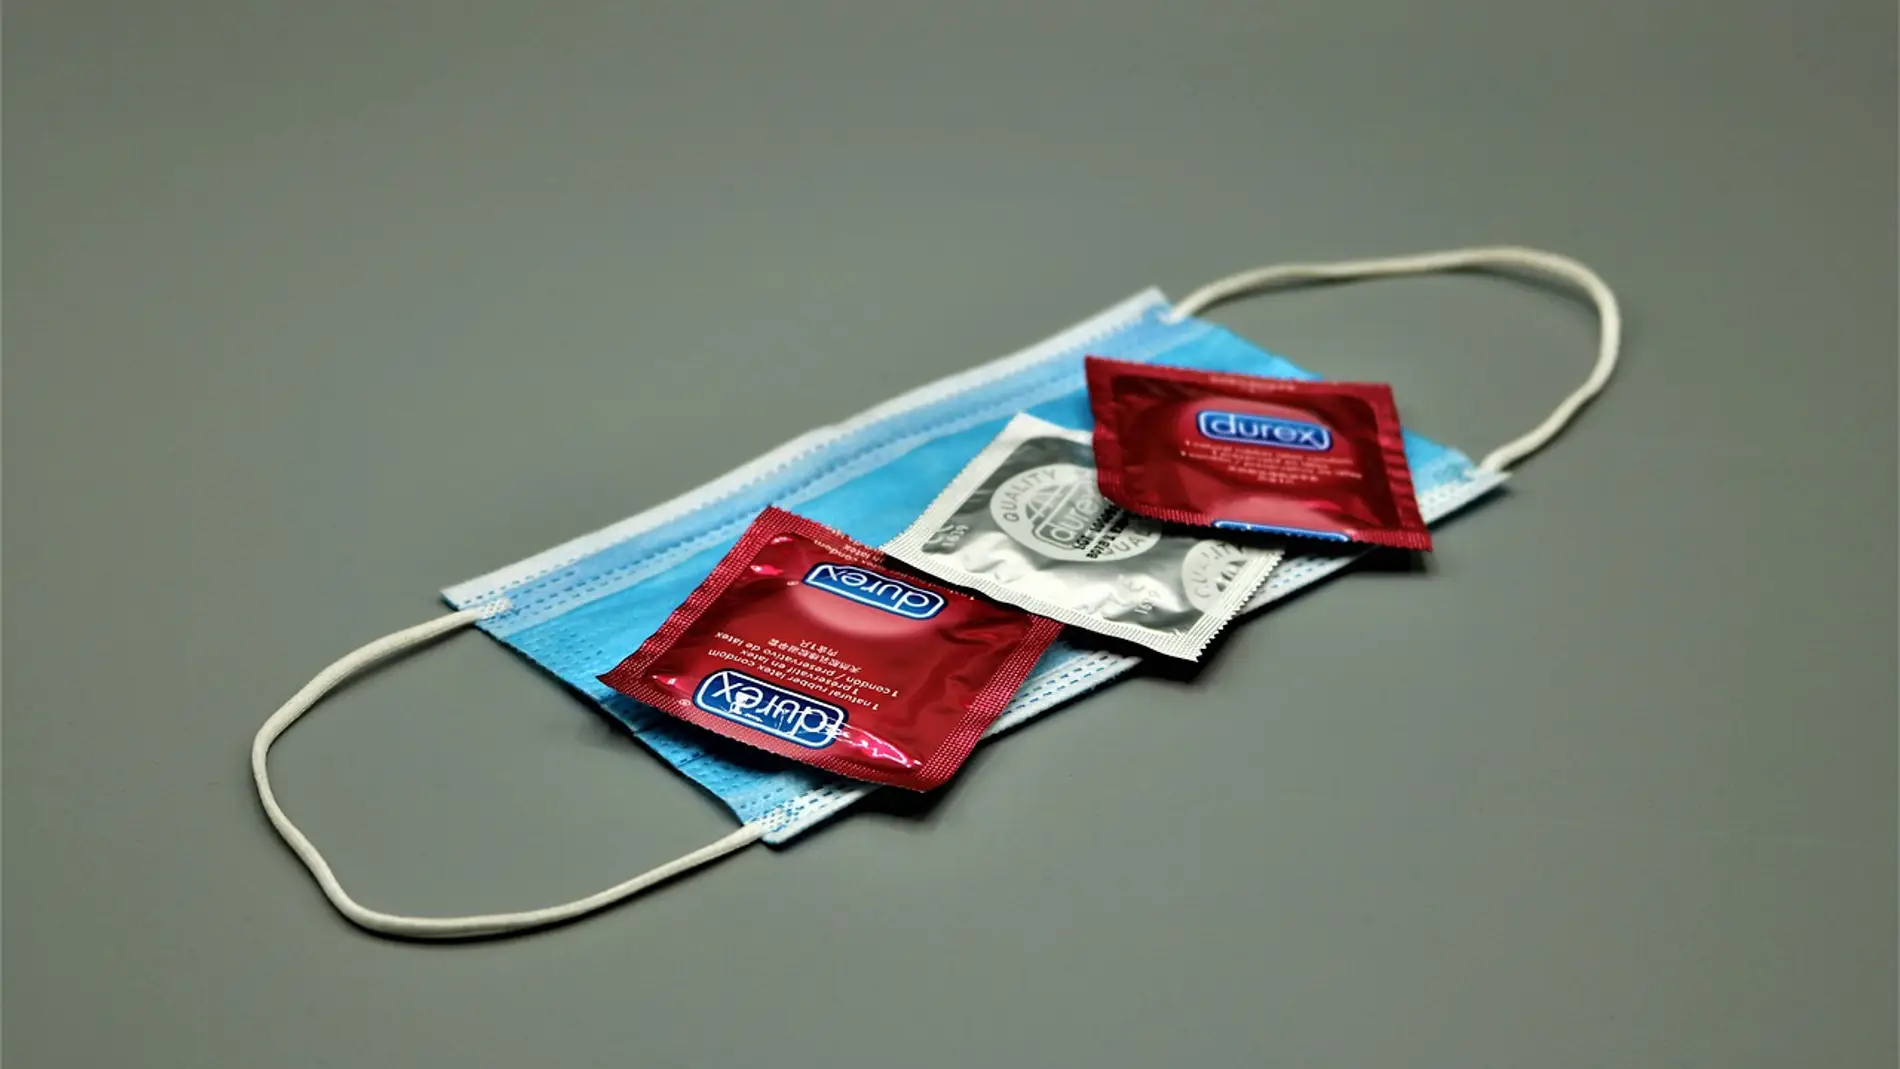 Preservativos Durex